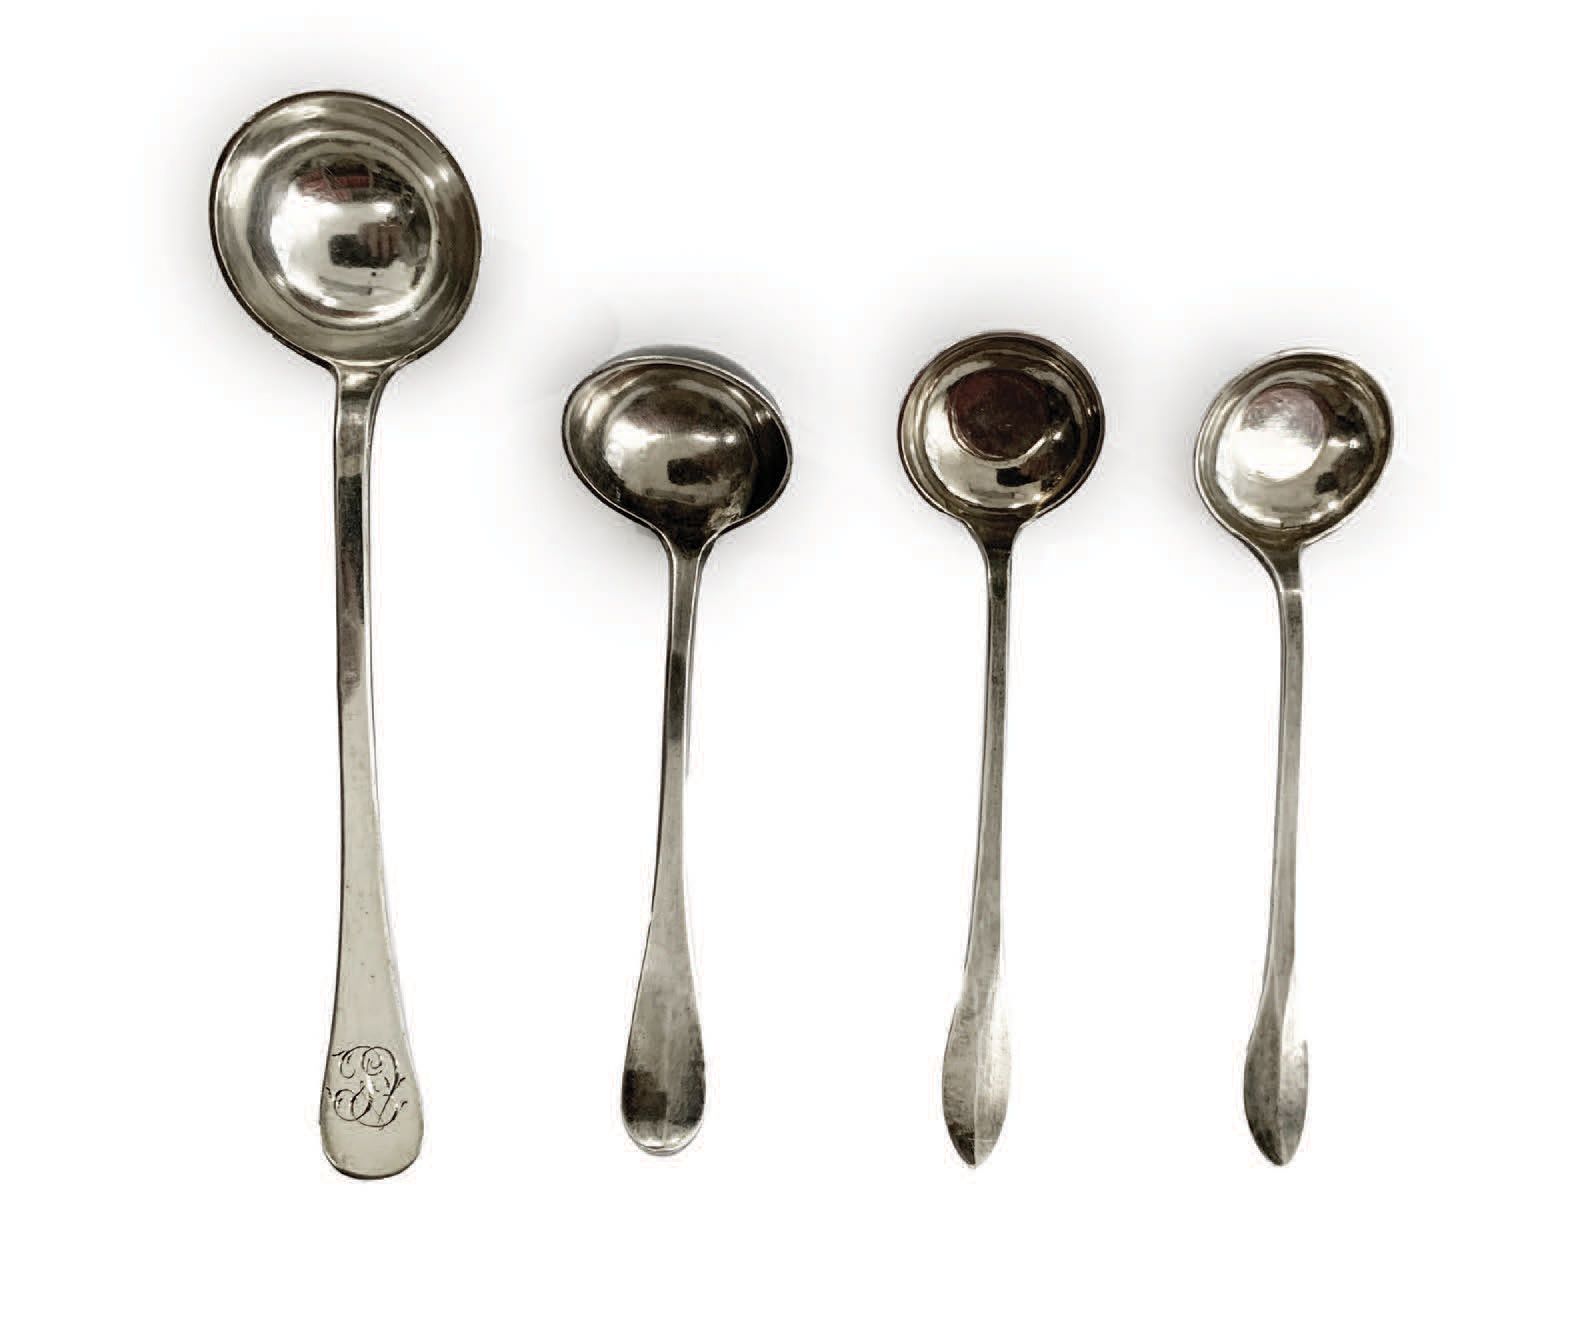 Null 一组四只小银杯 安特卫普/其他出处，18世纪下半叶
高_10至13厘米
重量：54克